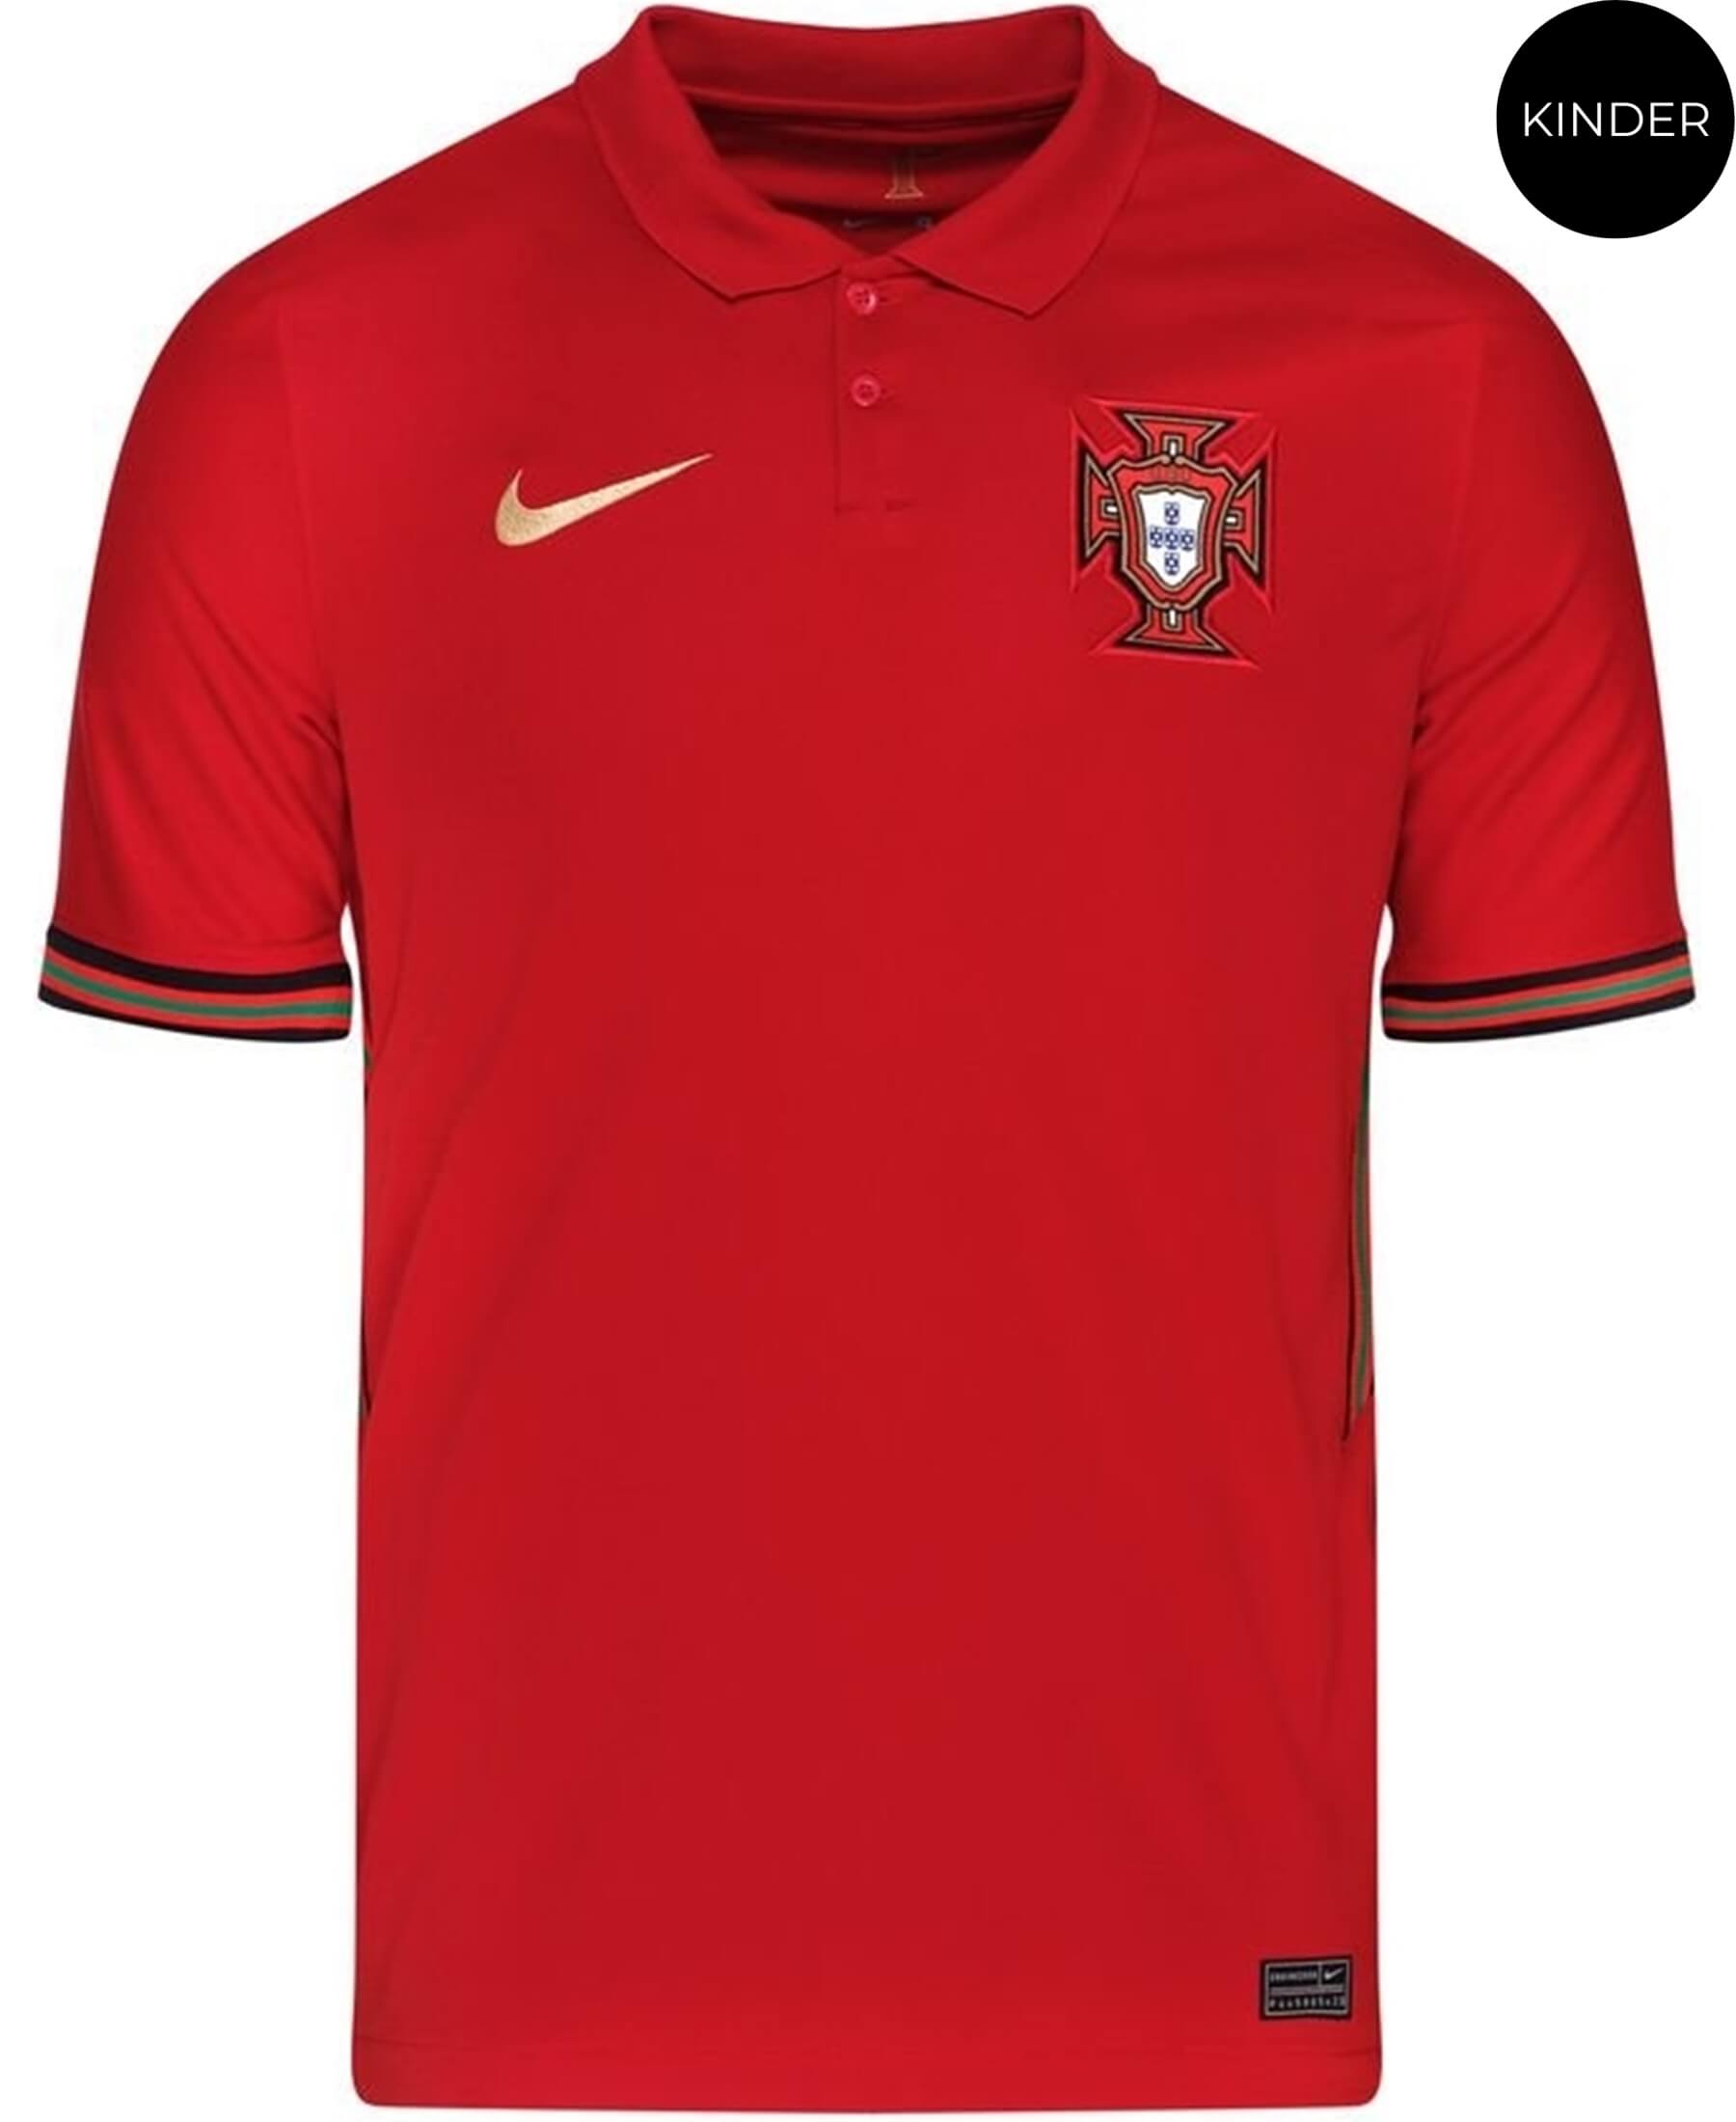 Das Nike Portugal FPF Stadium Kinder Heimtrikot für die UEFA Euro 2021 (CD1040-687) verbindet Stil und Unterstützung. Mit dem offiziellen Heimtrikot können junge Fans ihre Leidenschaft für das portugiesische Team zeigen. Das Trikot präsentiert sich in den charakteristischen roten Farben Portugals und trägt das FPF-Logo auf der Brust. Hochwertige Materialien bieten Komfort und Langlebigkeit. Ein unverzichtbares Kleidungsstück im Stadion oder im Alltag. Bestellen Sie jetzt bei SHOP4TEAMSPORT.